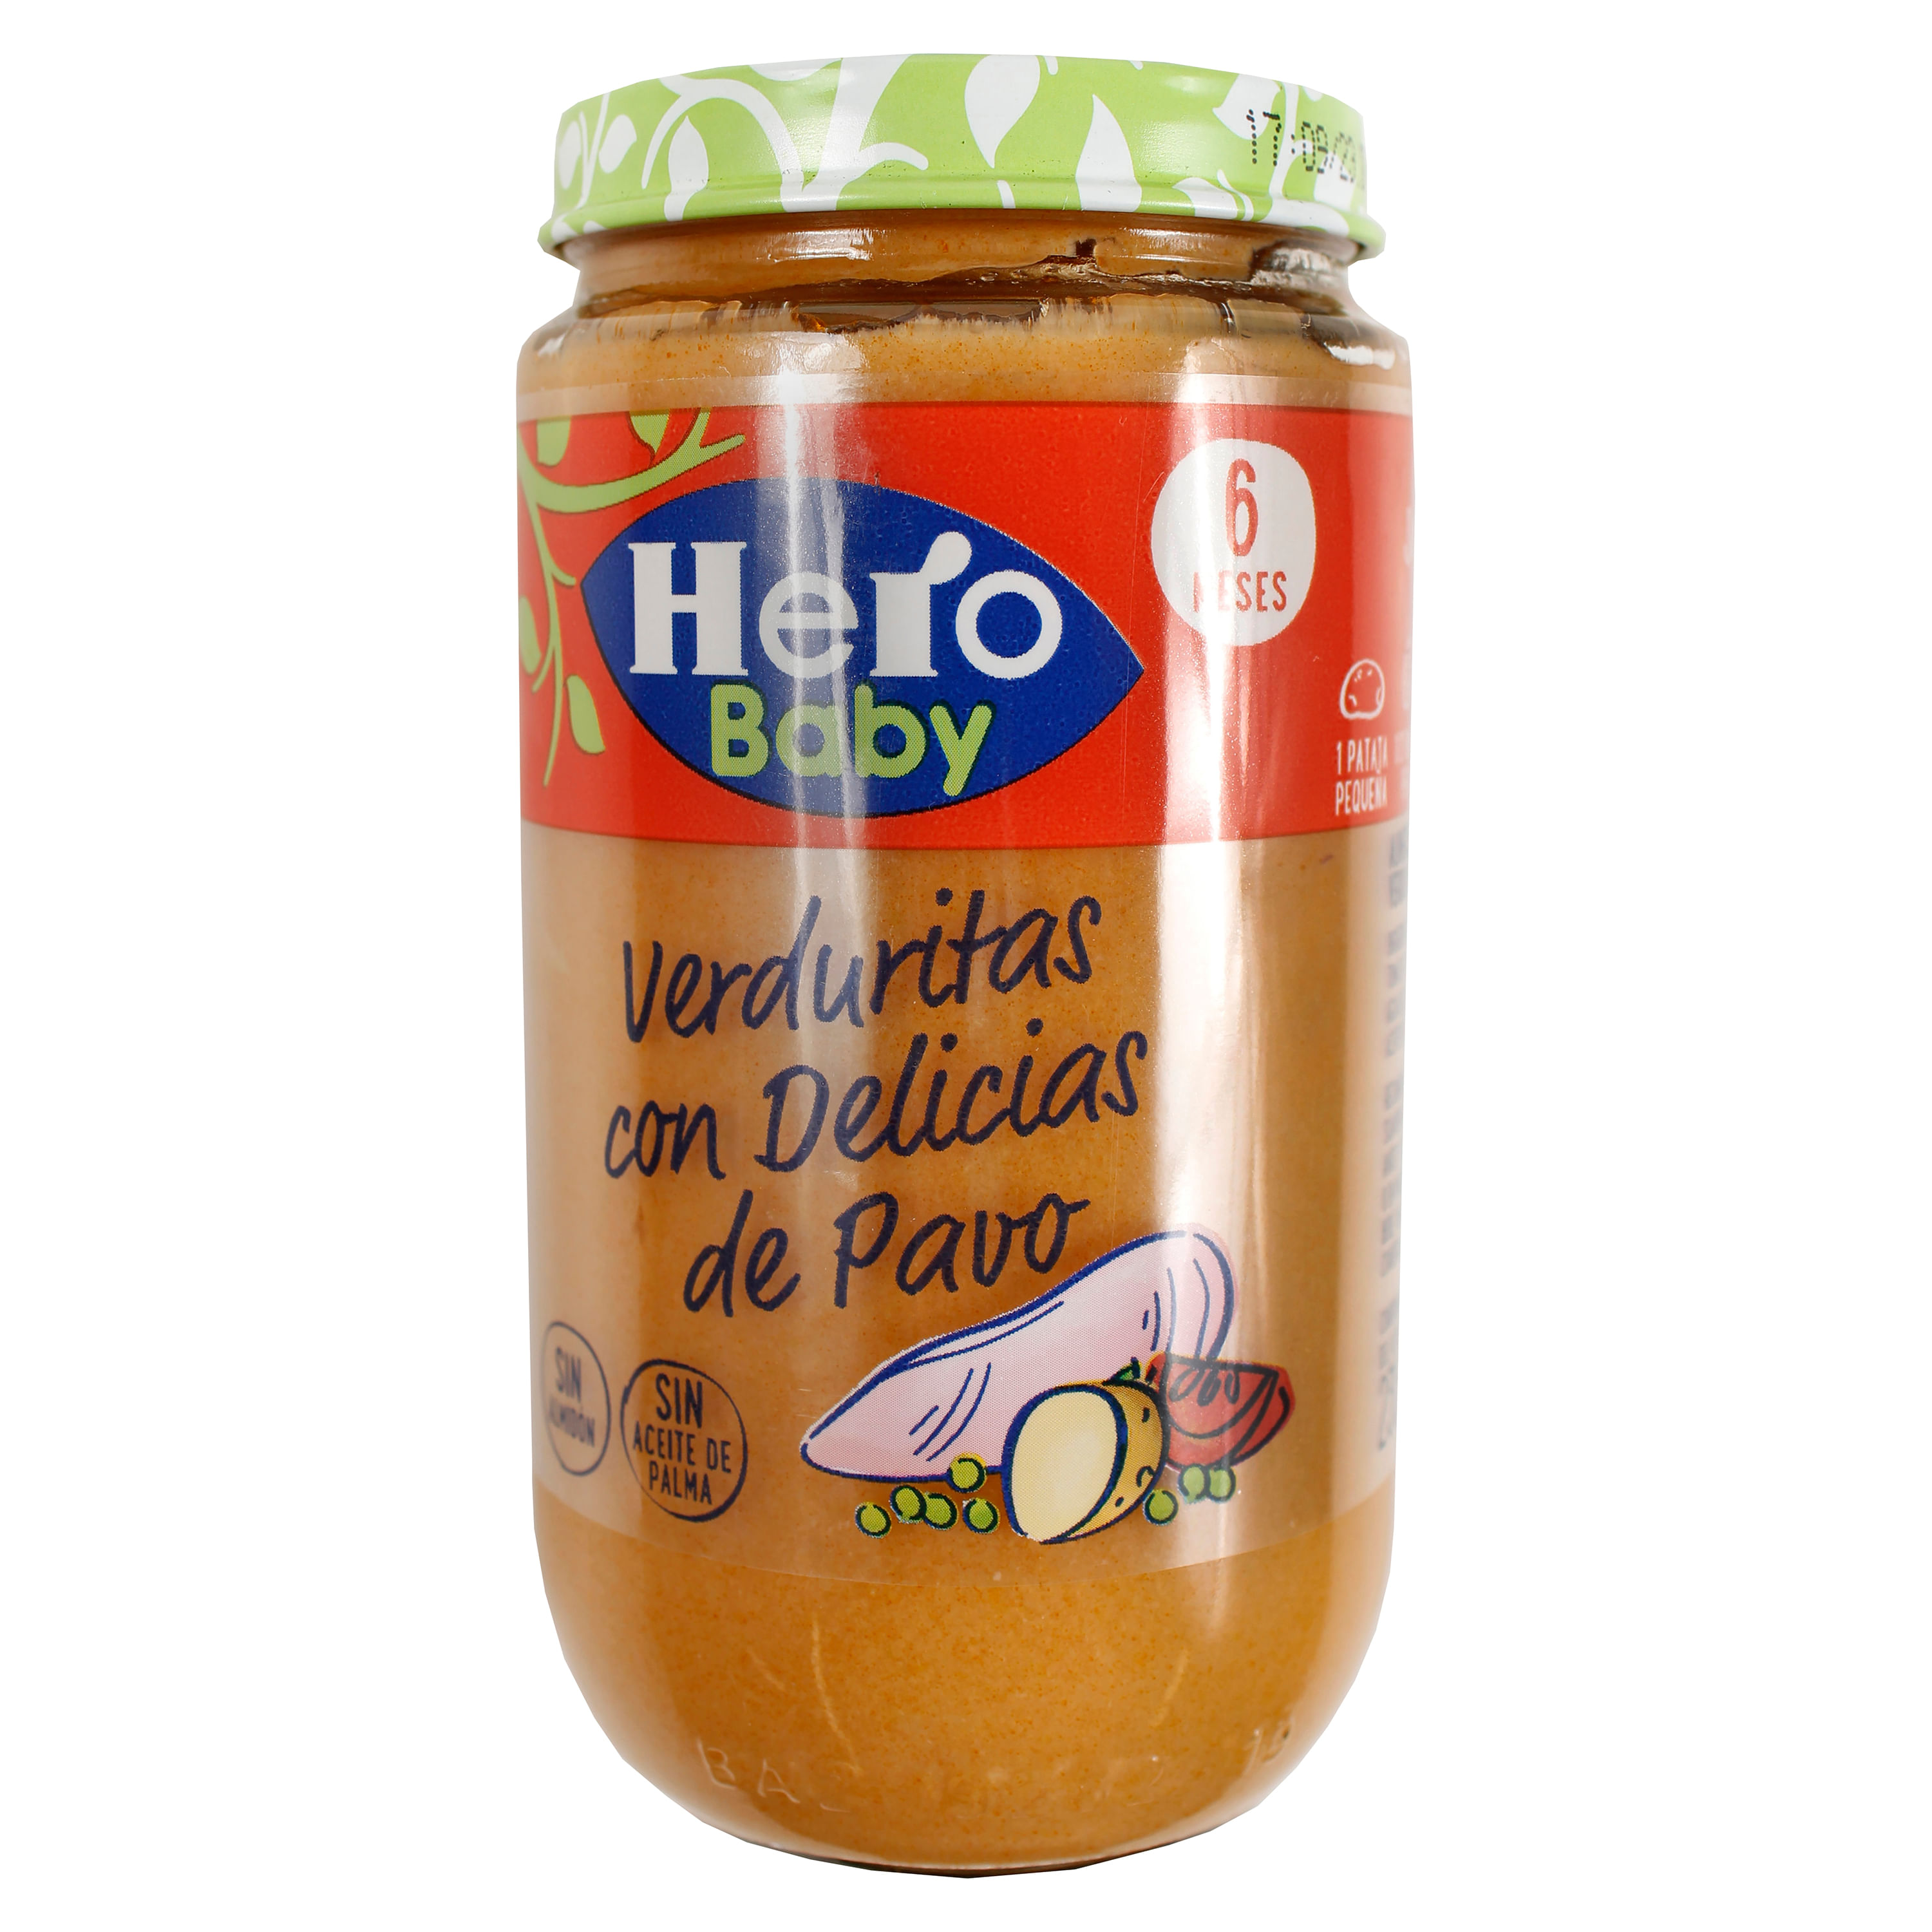 Hero Baby Compotas Saladas Potito / Papilla. 